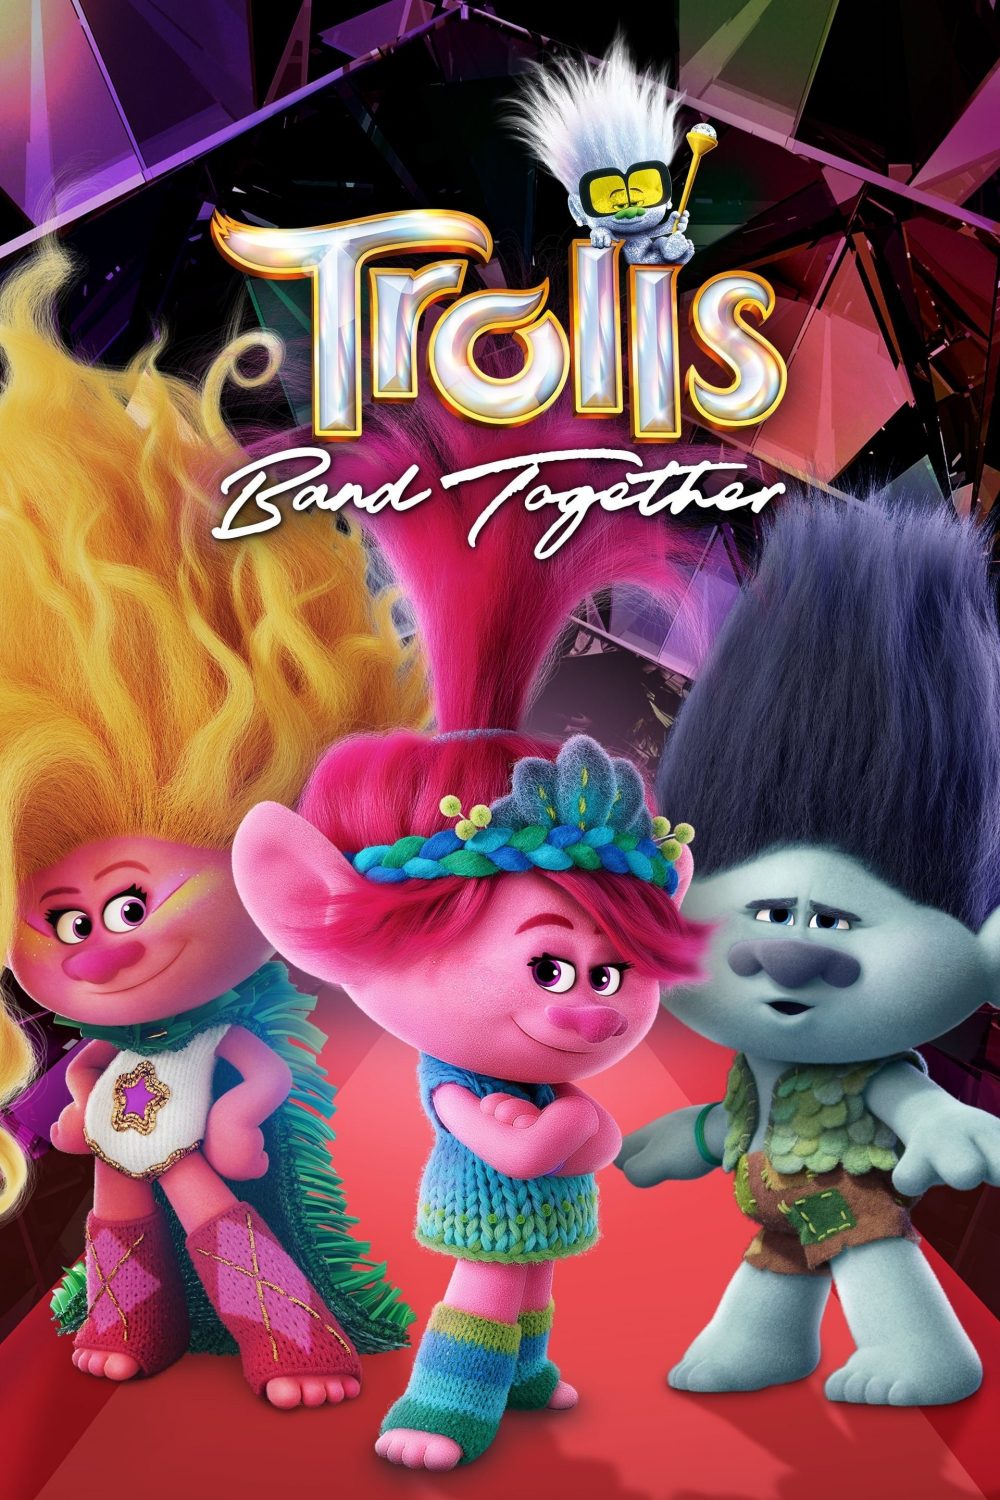 Phim hoạt hình chiếu rạp 2023: Quỷ lùn tinh nghịch: Đồng tâm hiệp nhạc – Trolls band together (2023)